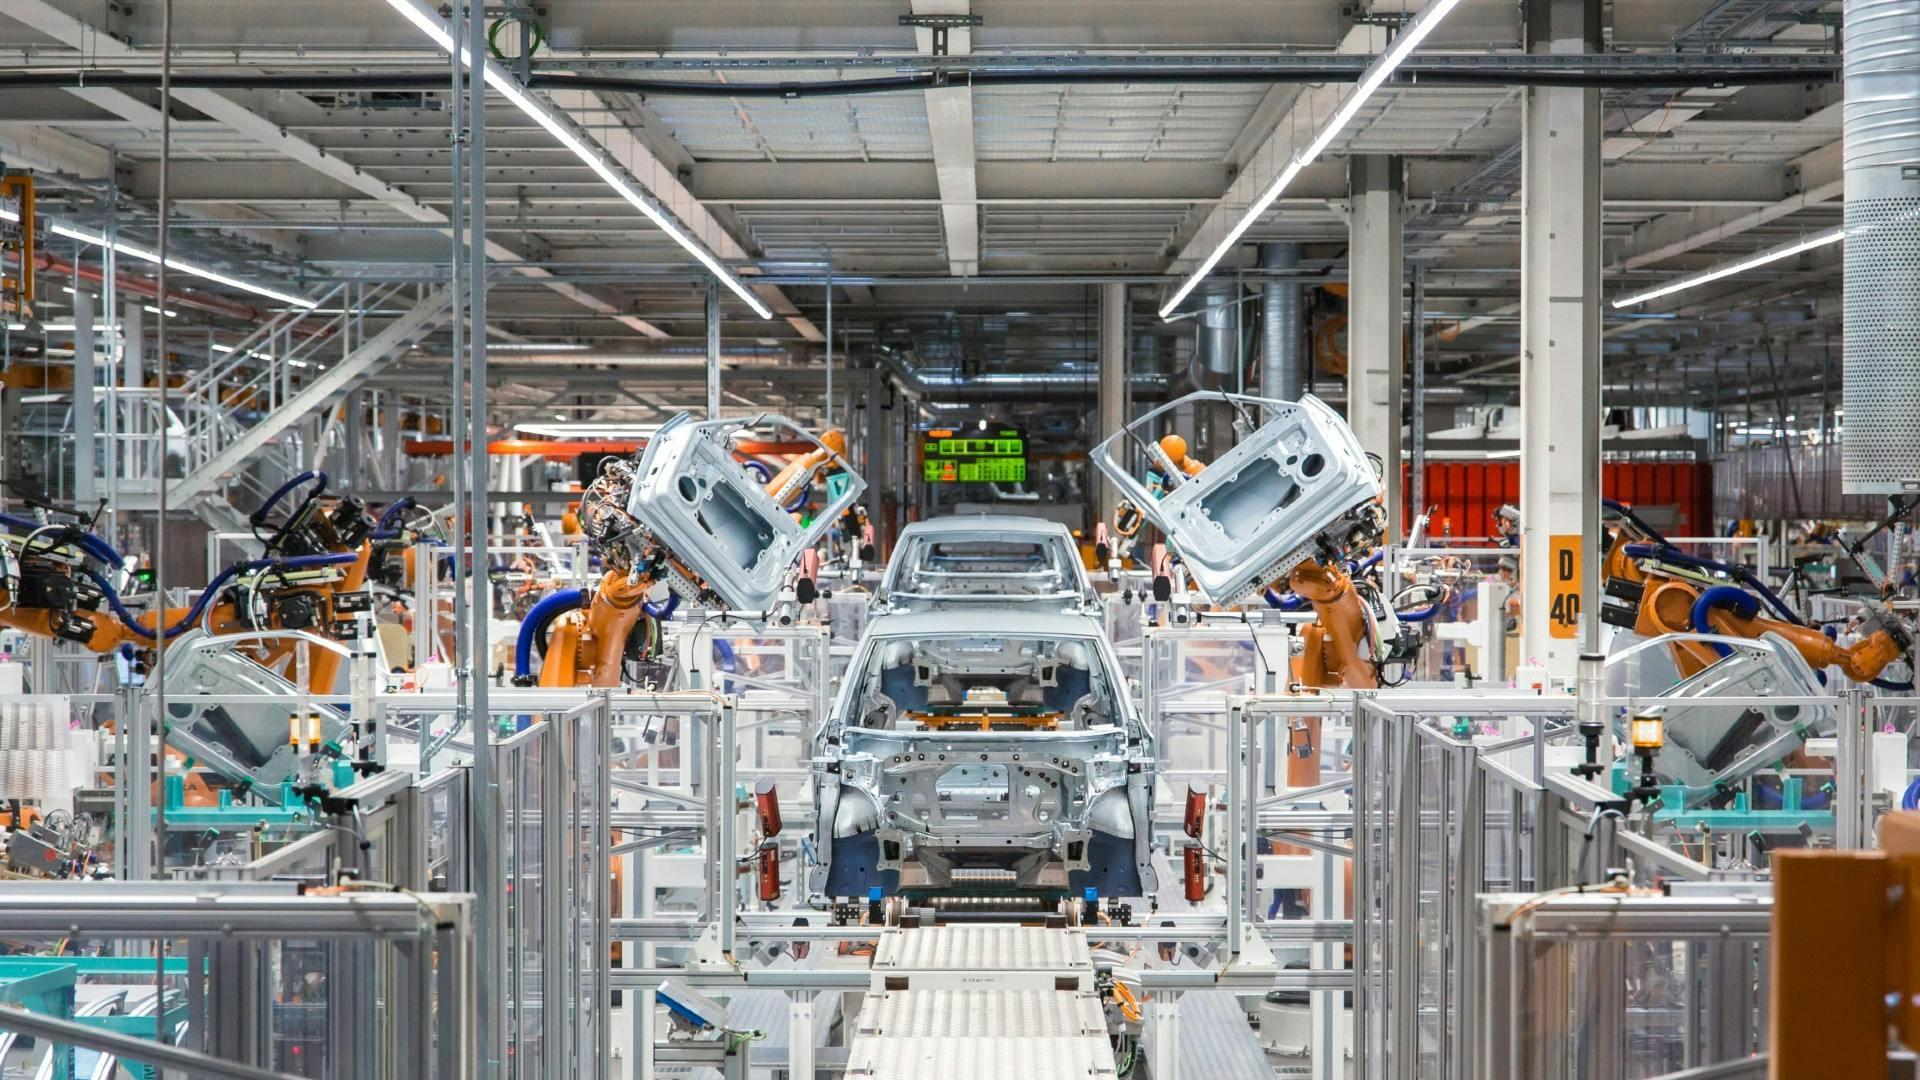 Schnelle Fabrikentwicklung für die Automobilindustrie – Verschaffen Sie sich einen Überblick über Ihre Produktionsprozesse, indem Sie ältere Geräte mit intelligenten Technologien aufrüsten